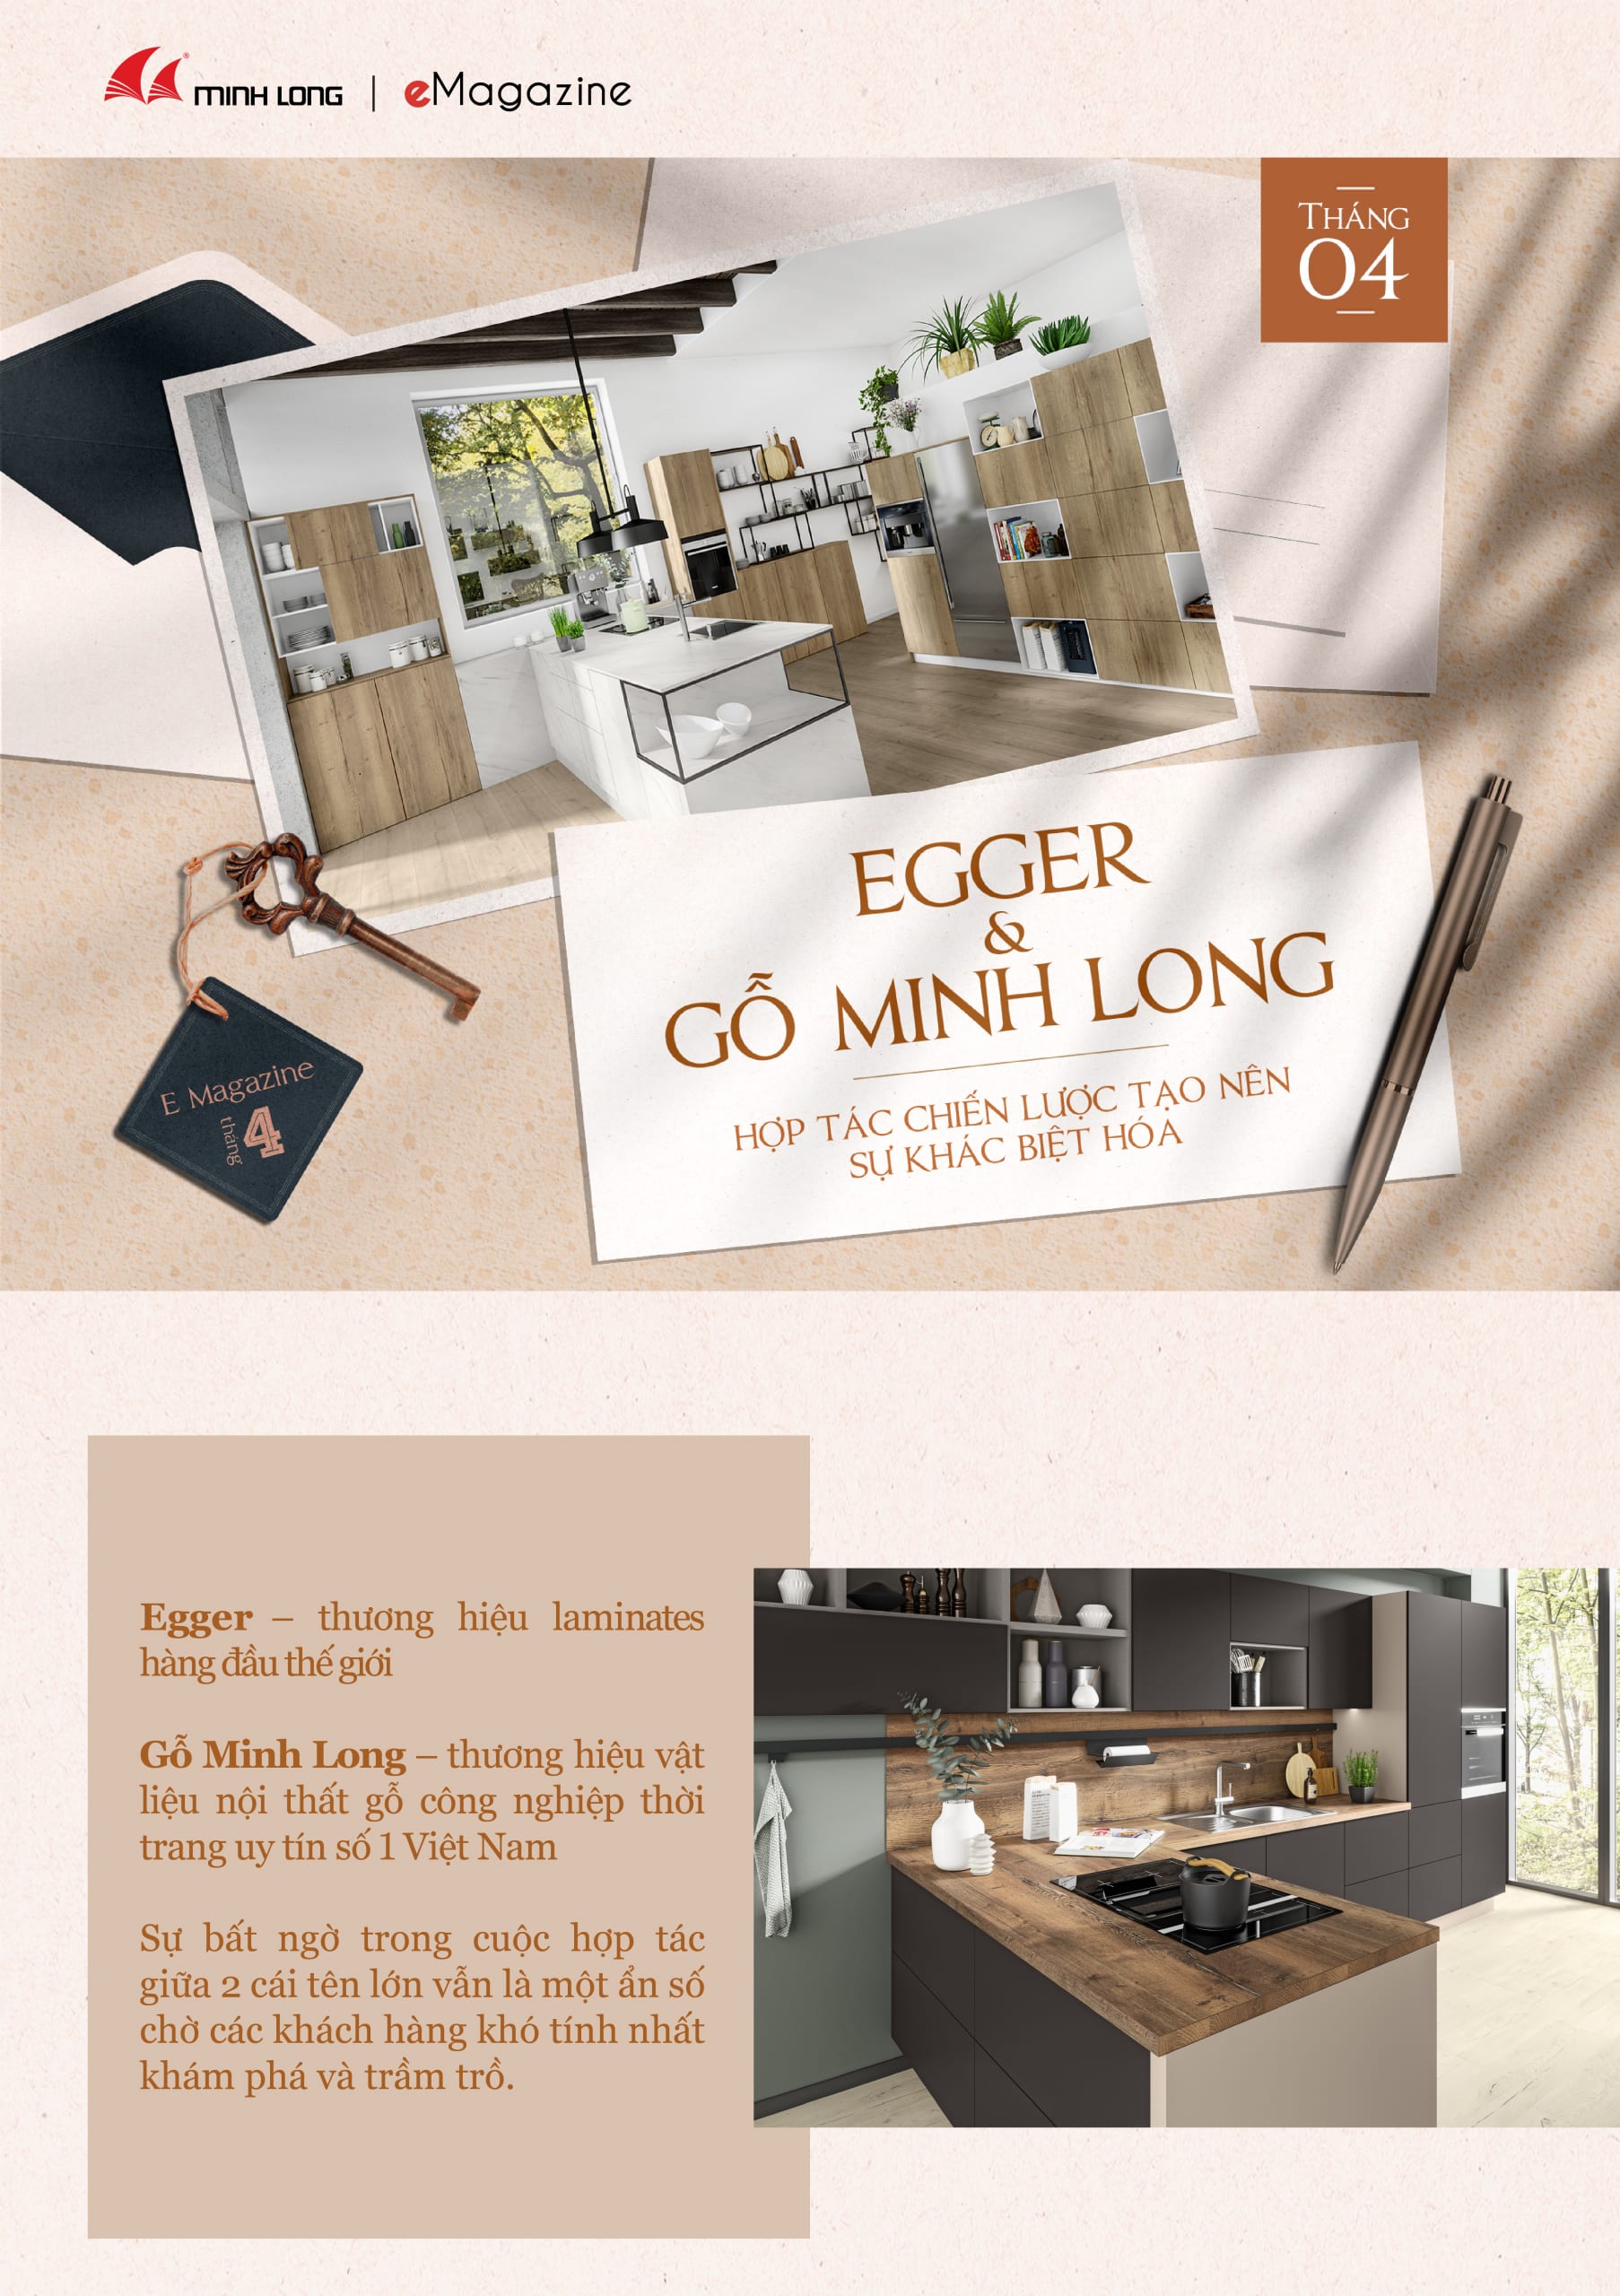 eMagazine 04/2021: Egger & Gỗ Minh Long - Hợp tác chiến lược tạo nên sự khác biệt hóa